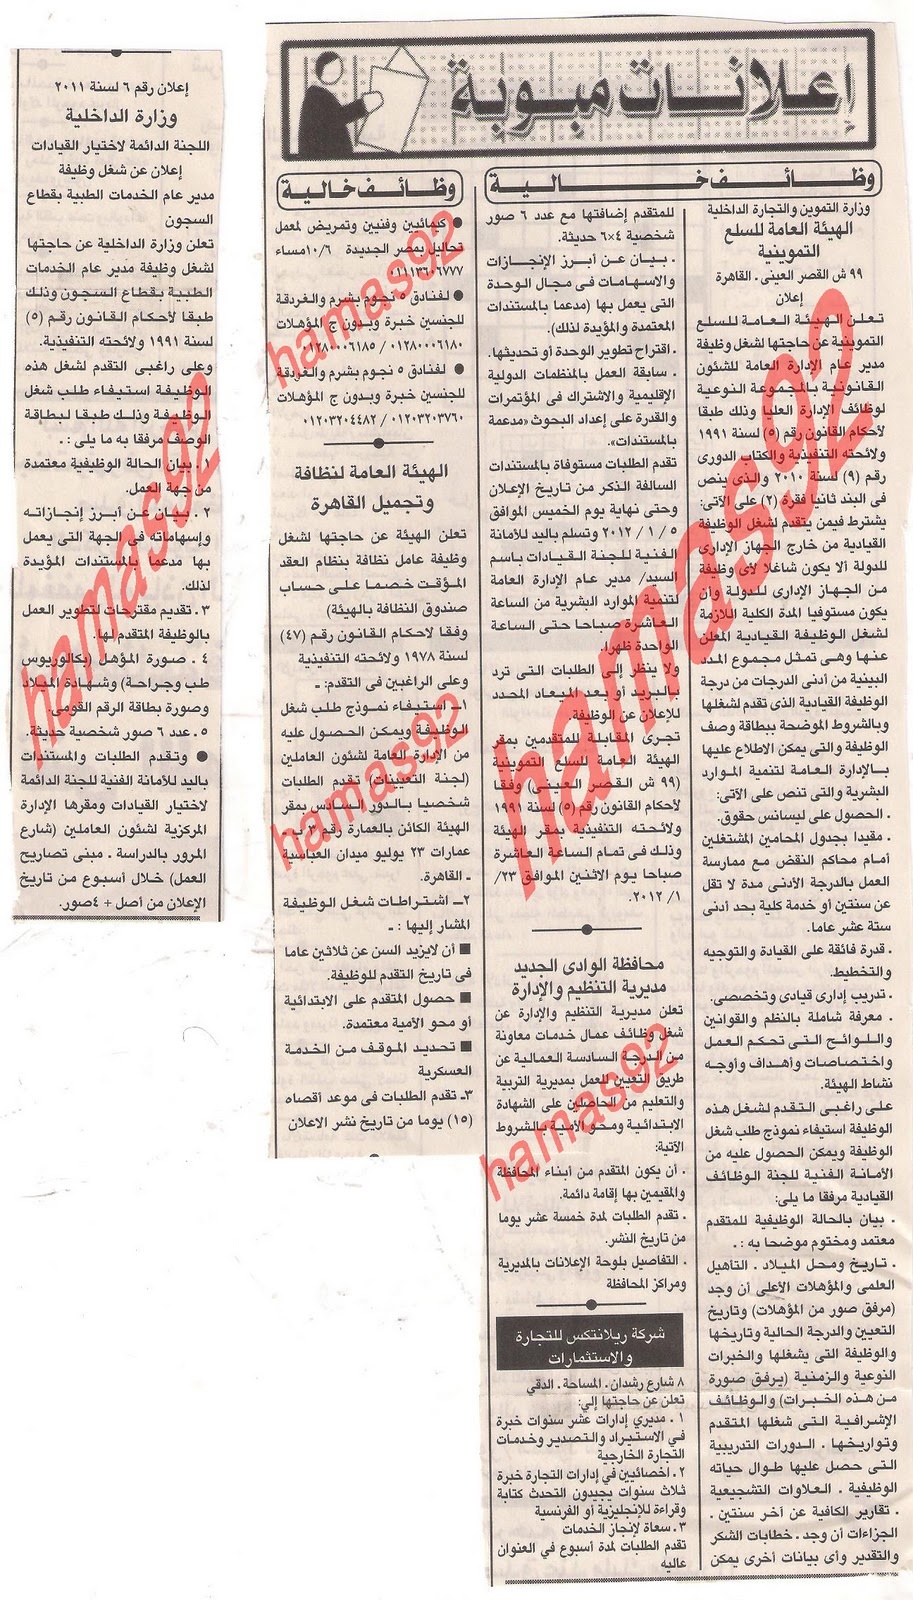 وظائف جريدة الاهرام الخميس 29\12\2011 , مطلوب معلمين لوزارة التربية بالكويت  Picture+002